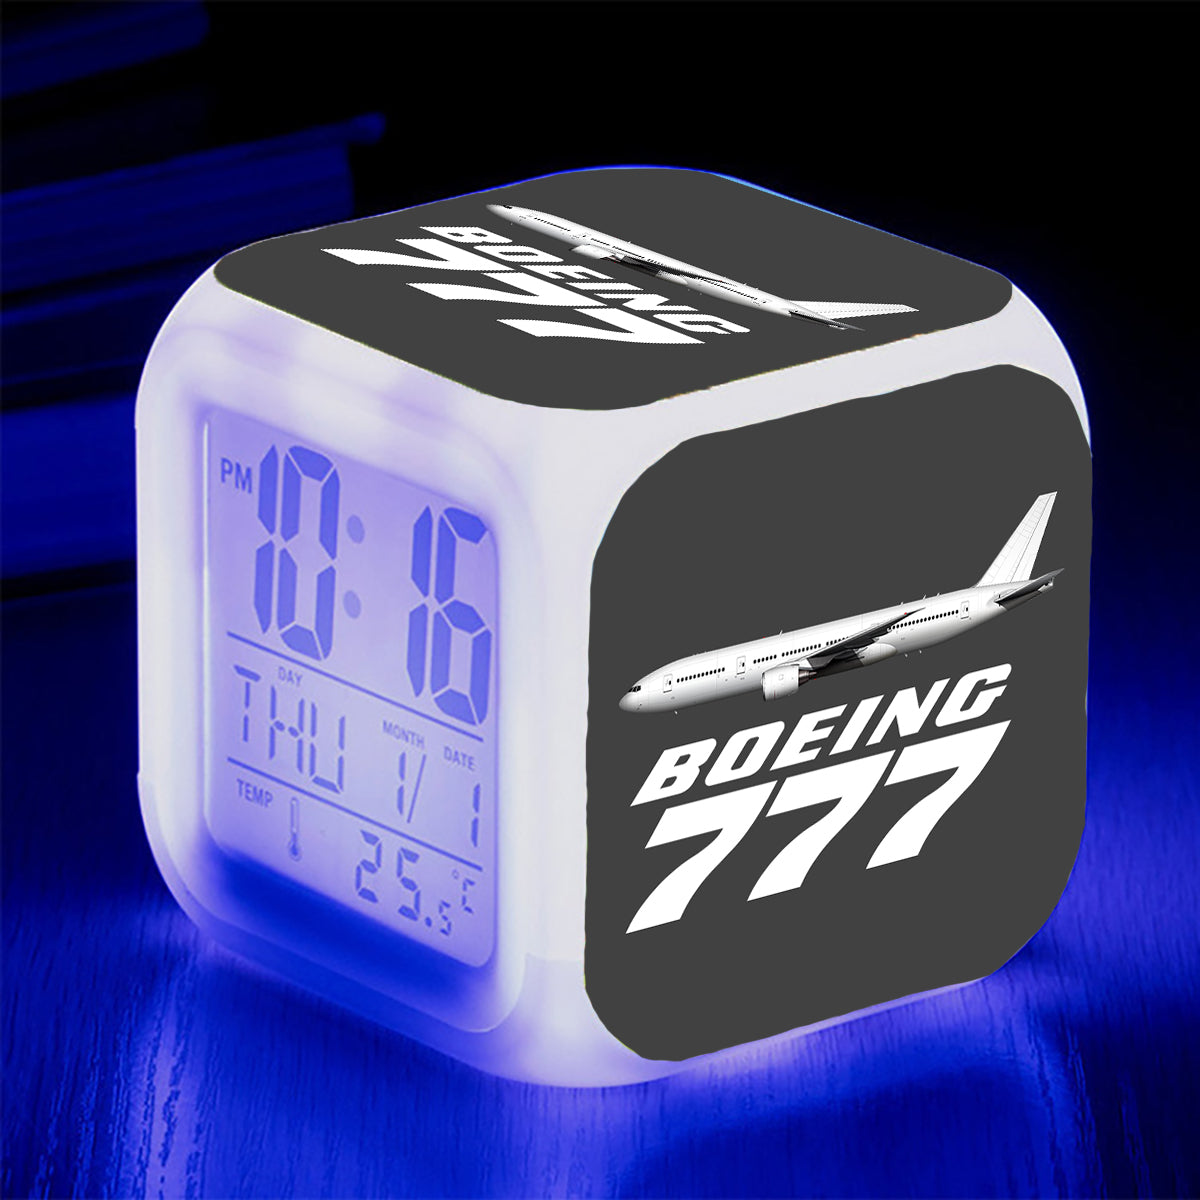 The Boeing 777 Designed "7 Colour" Digital Alarm Clock